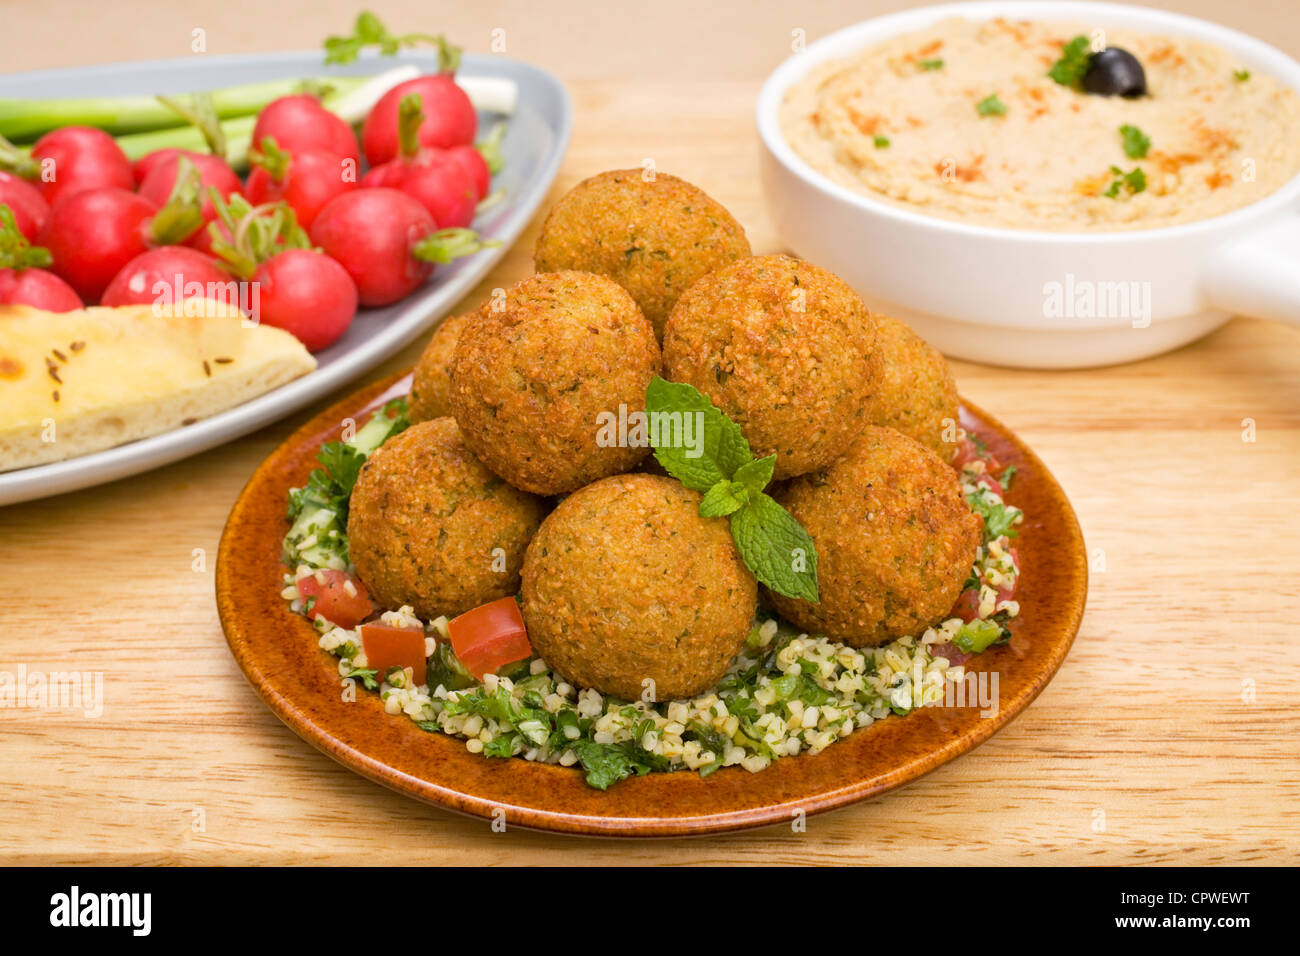 Nahen Osten behandelt, Falafel, sitzt auf einem Bett von Taboulé mit Hummus und Radieschen. Stockfoto